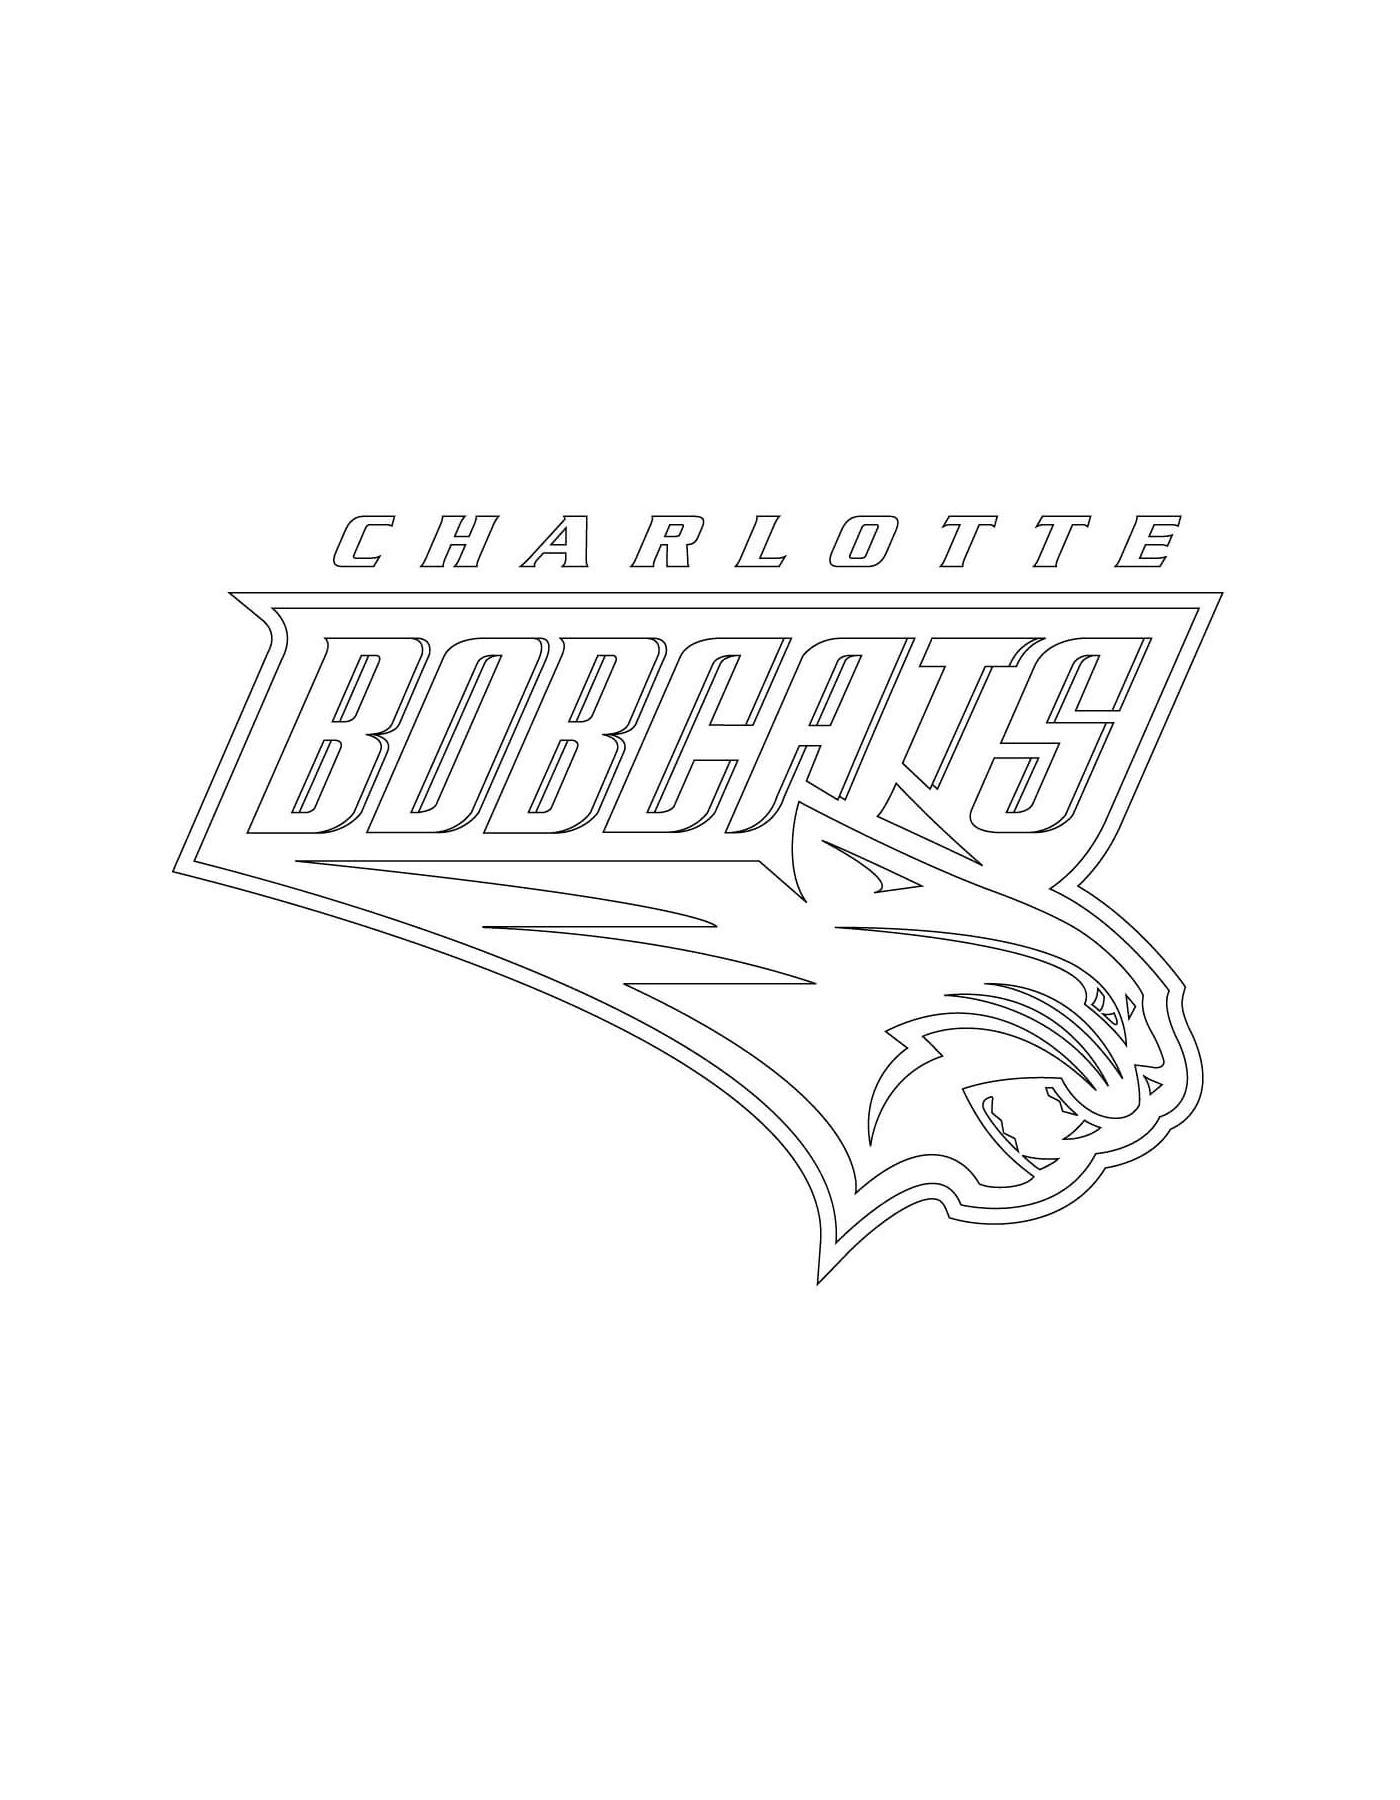  Логотип Шарлотты Бобкатс из НБА 